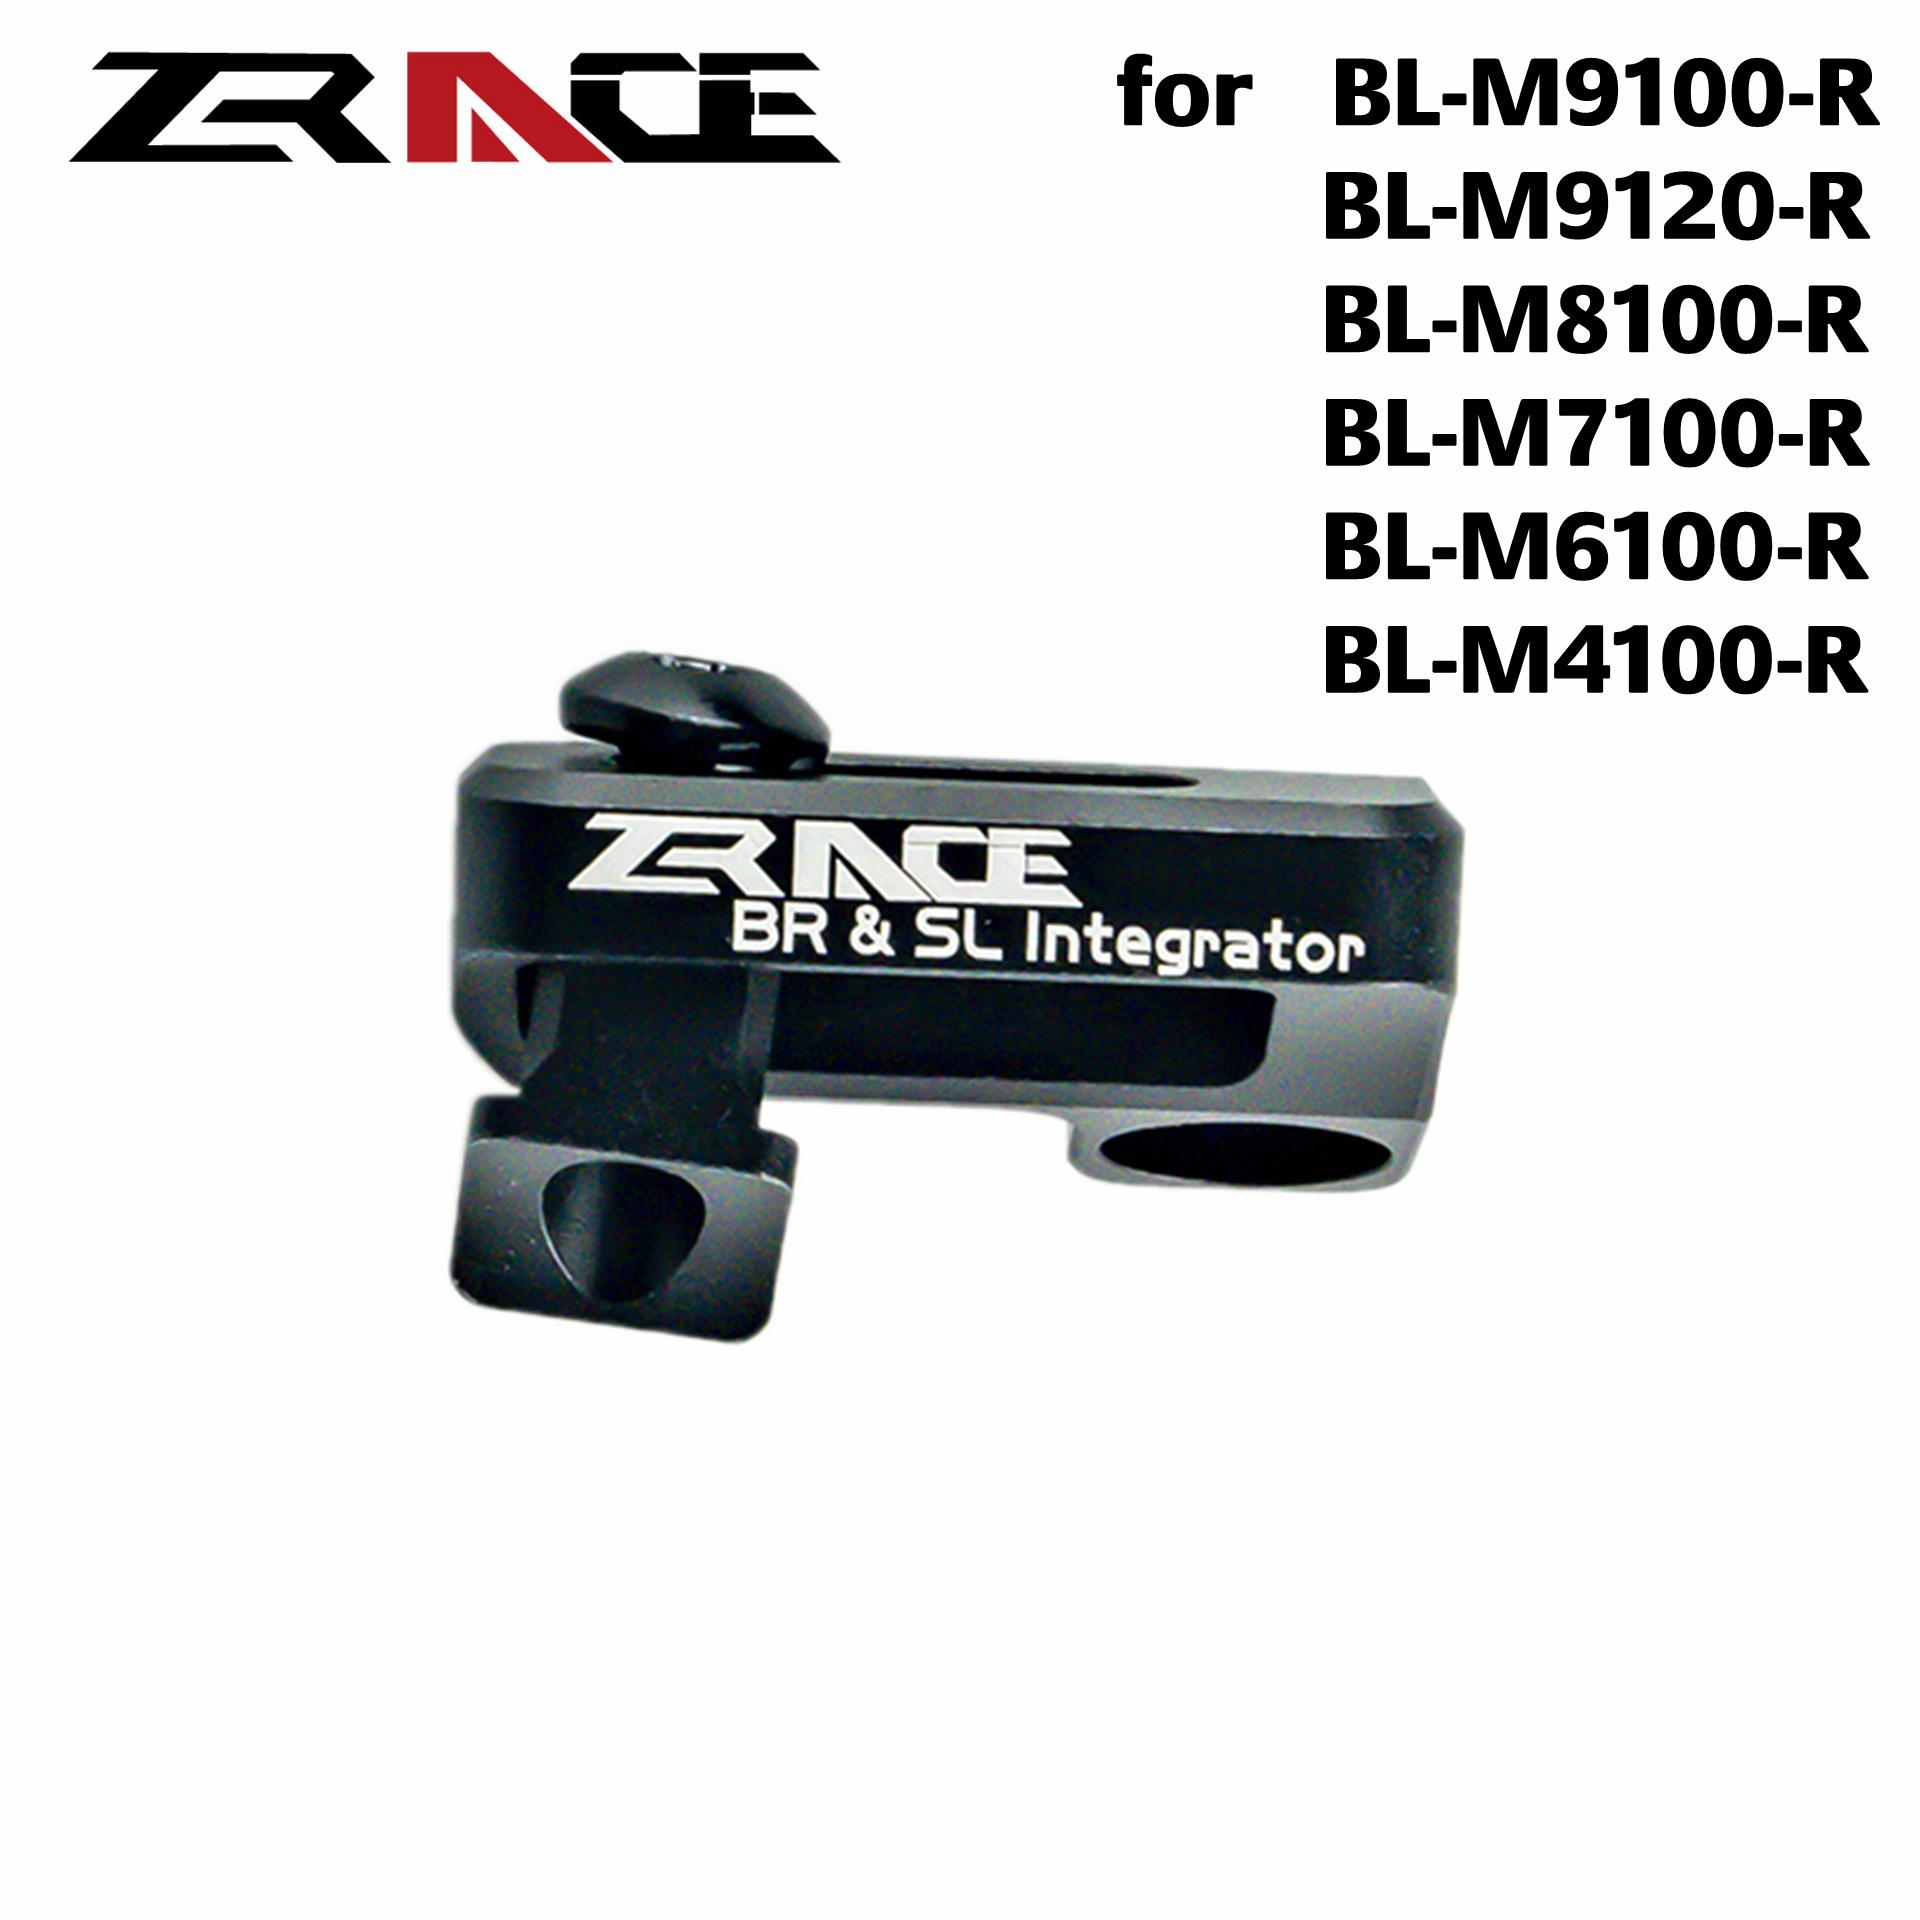 Изображение товара: Zracing XTR / XT / SLX / DEORE тормозной интегрированный SRAM переходник для ручки переключения, спикер SHIMANO тормоза и SRAM Shifter 2 в 1, AL7075, 4,5g